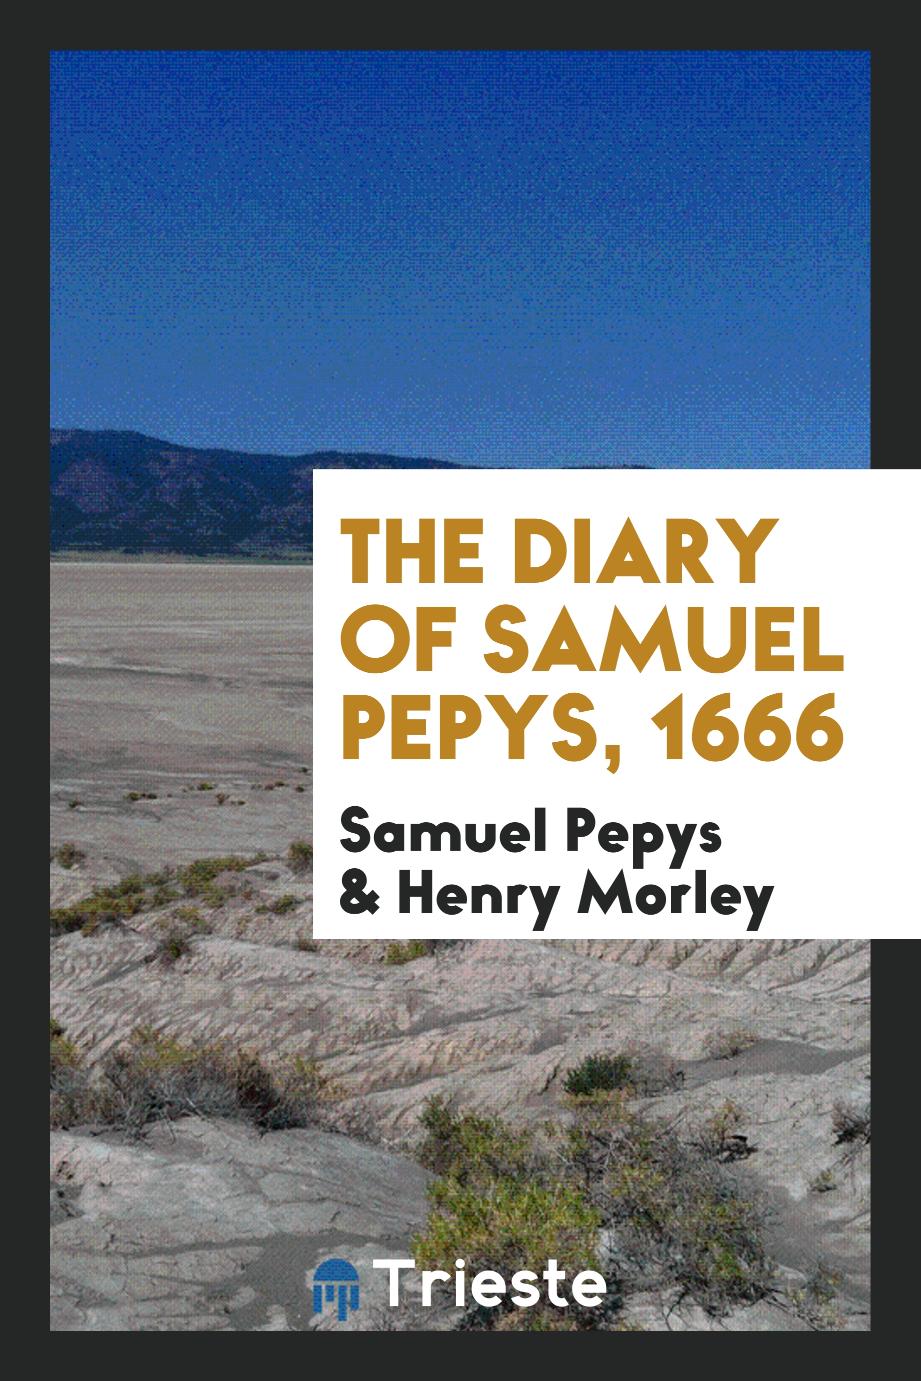 The Diary of Samuel Pepys, 1666